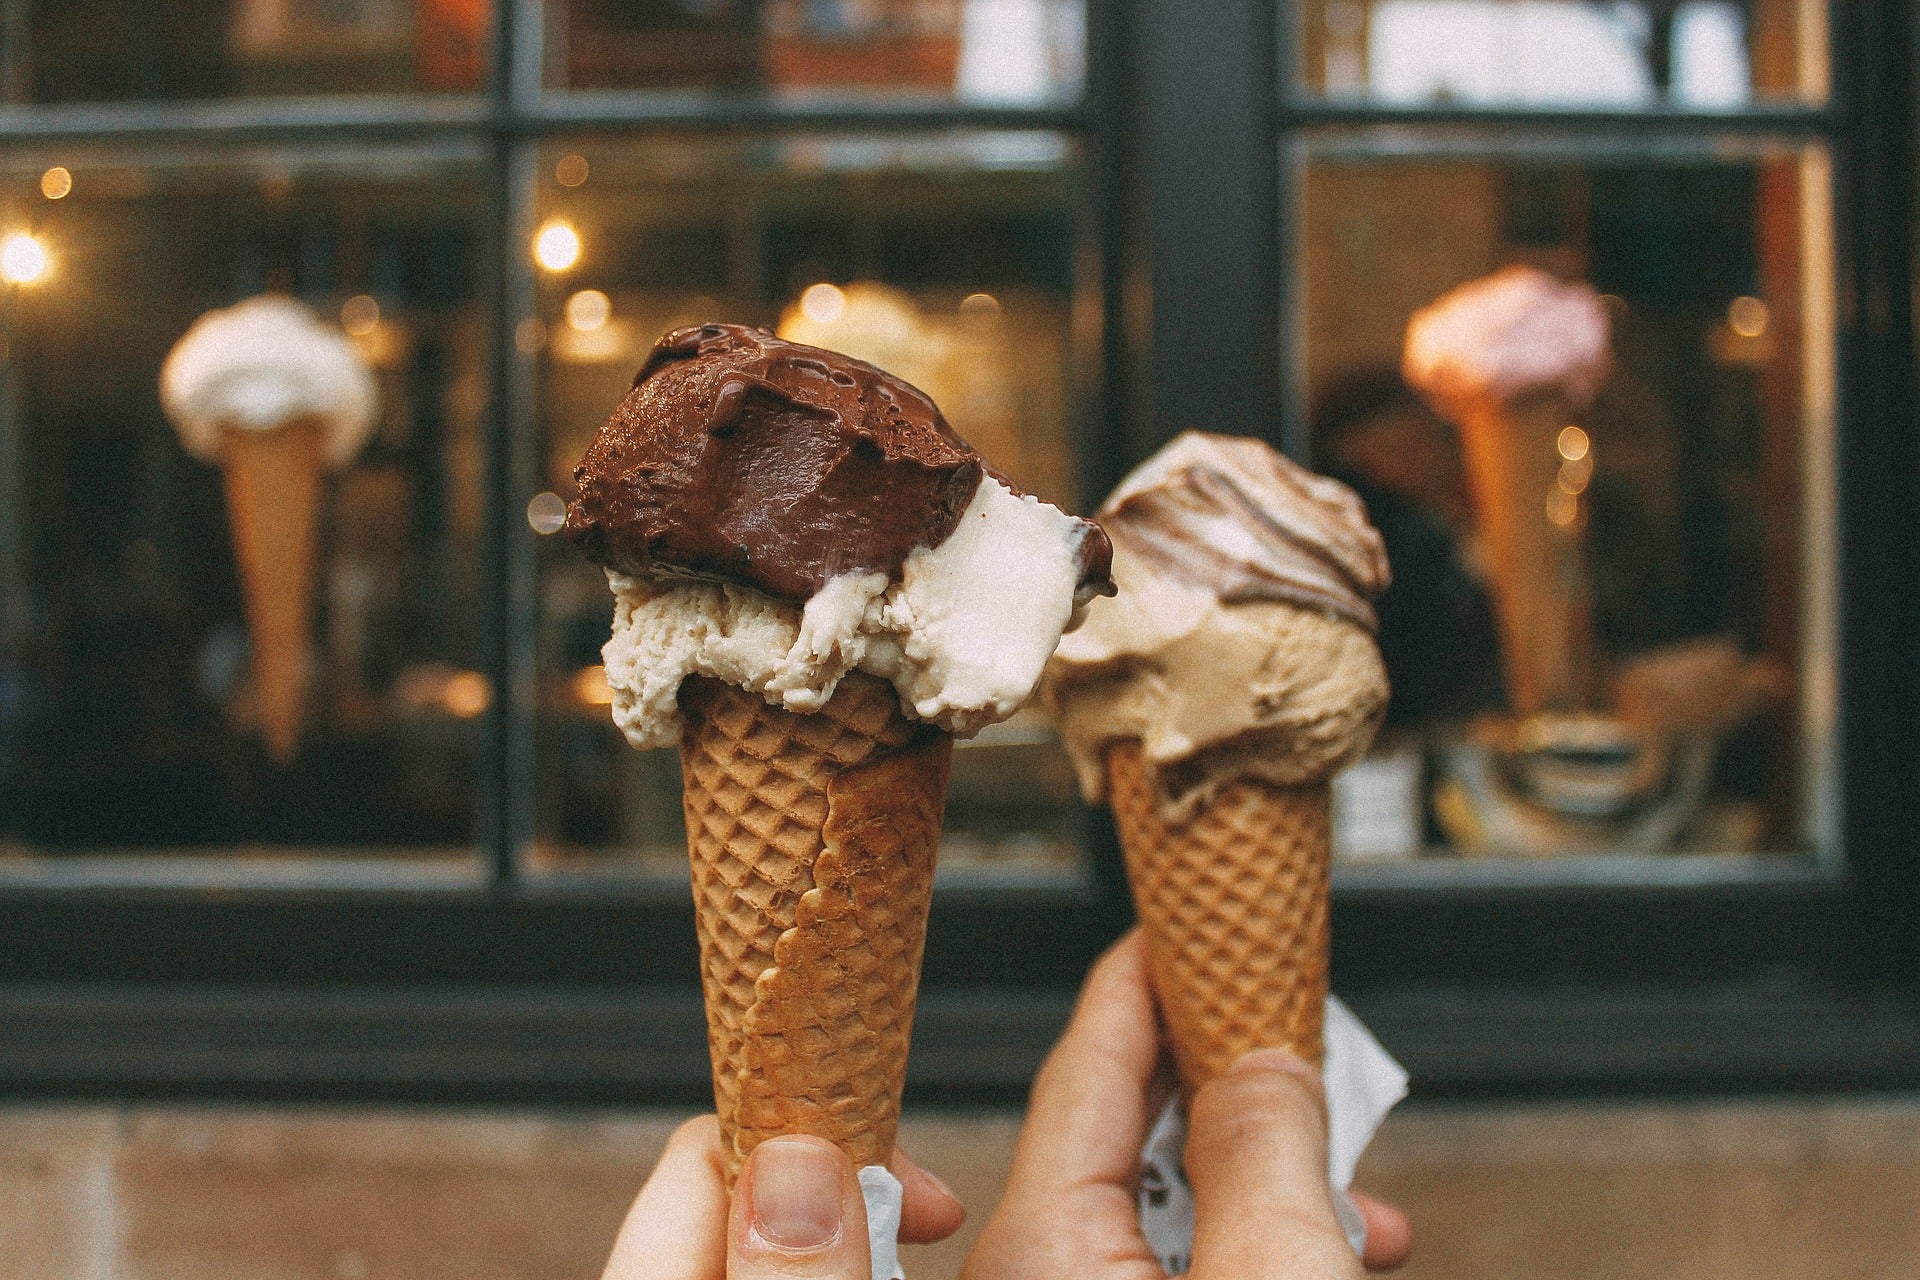 Hard serve ice cream in a cone